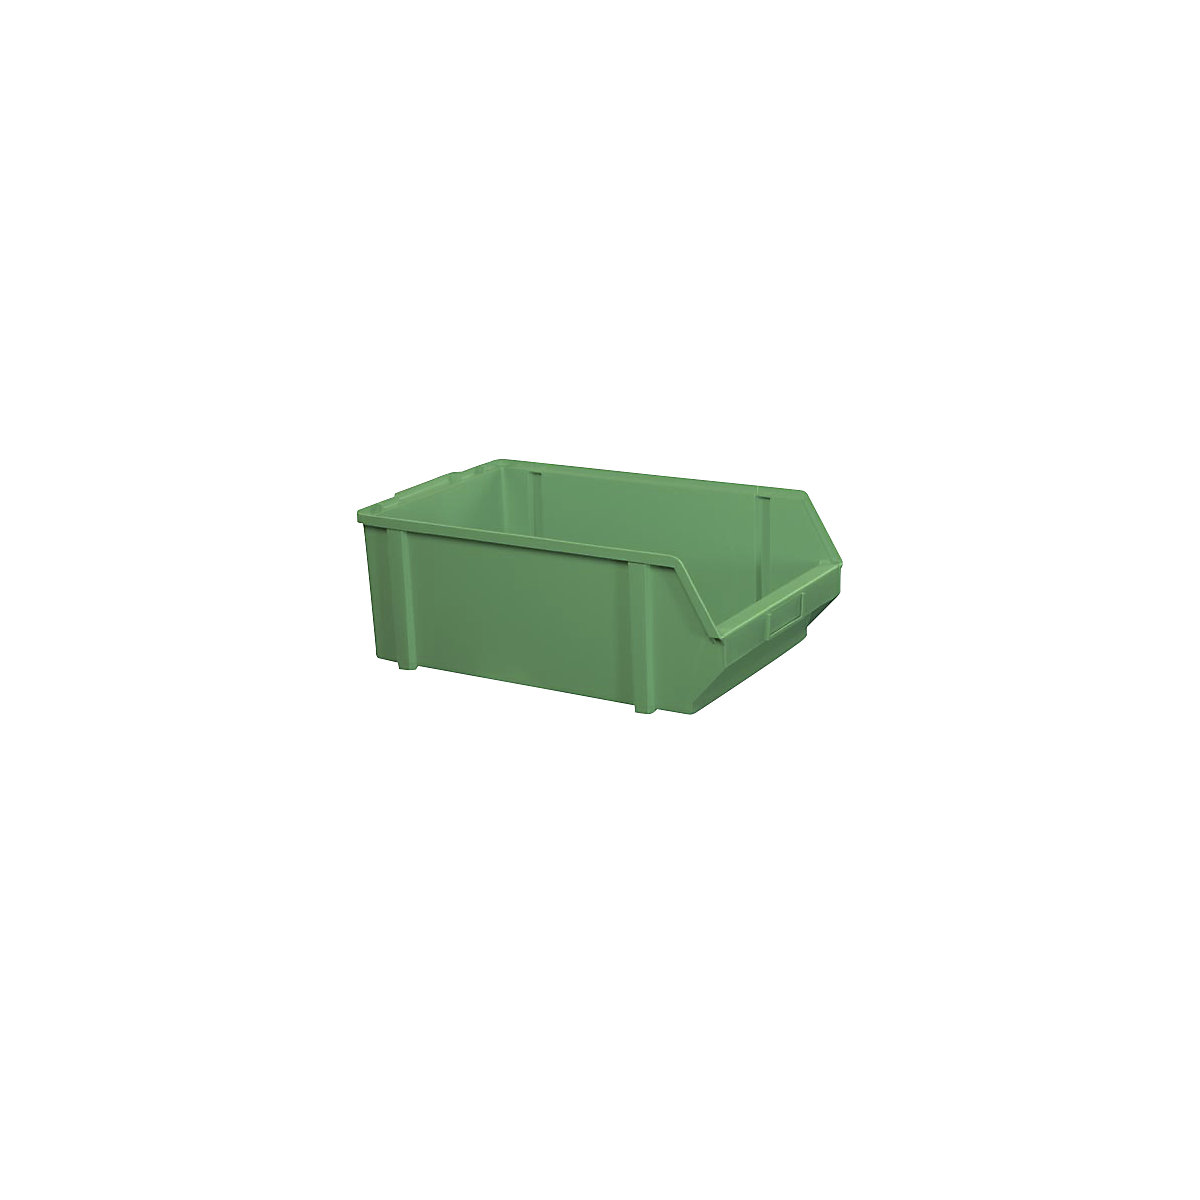 Sichtlagerkasten aus Polystyrol, Länge 500 mm, BxH 303 x 180 mm, VE 5 Stk, grün-4